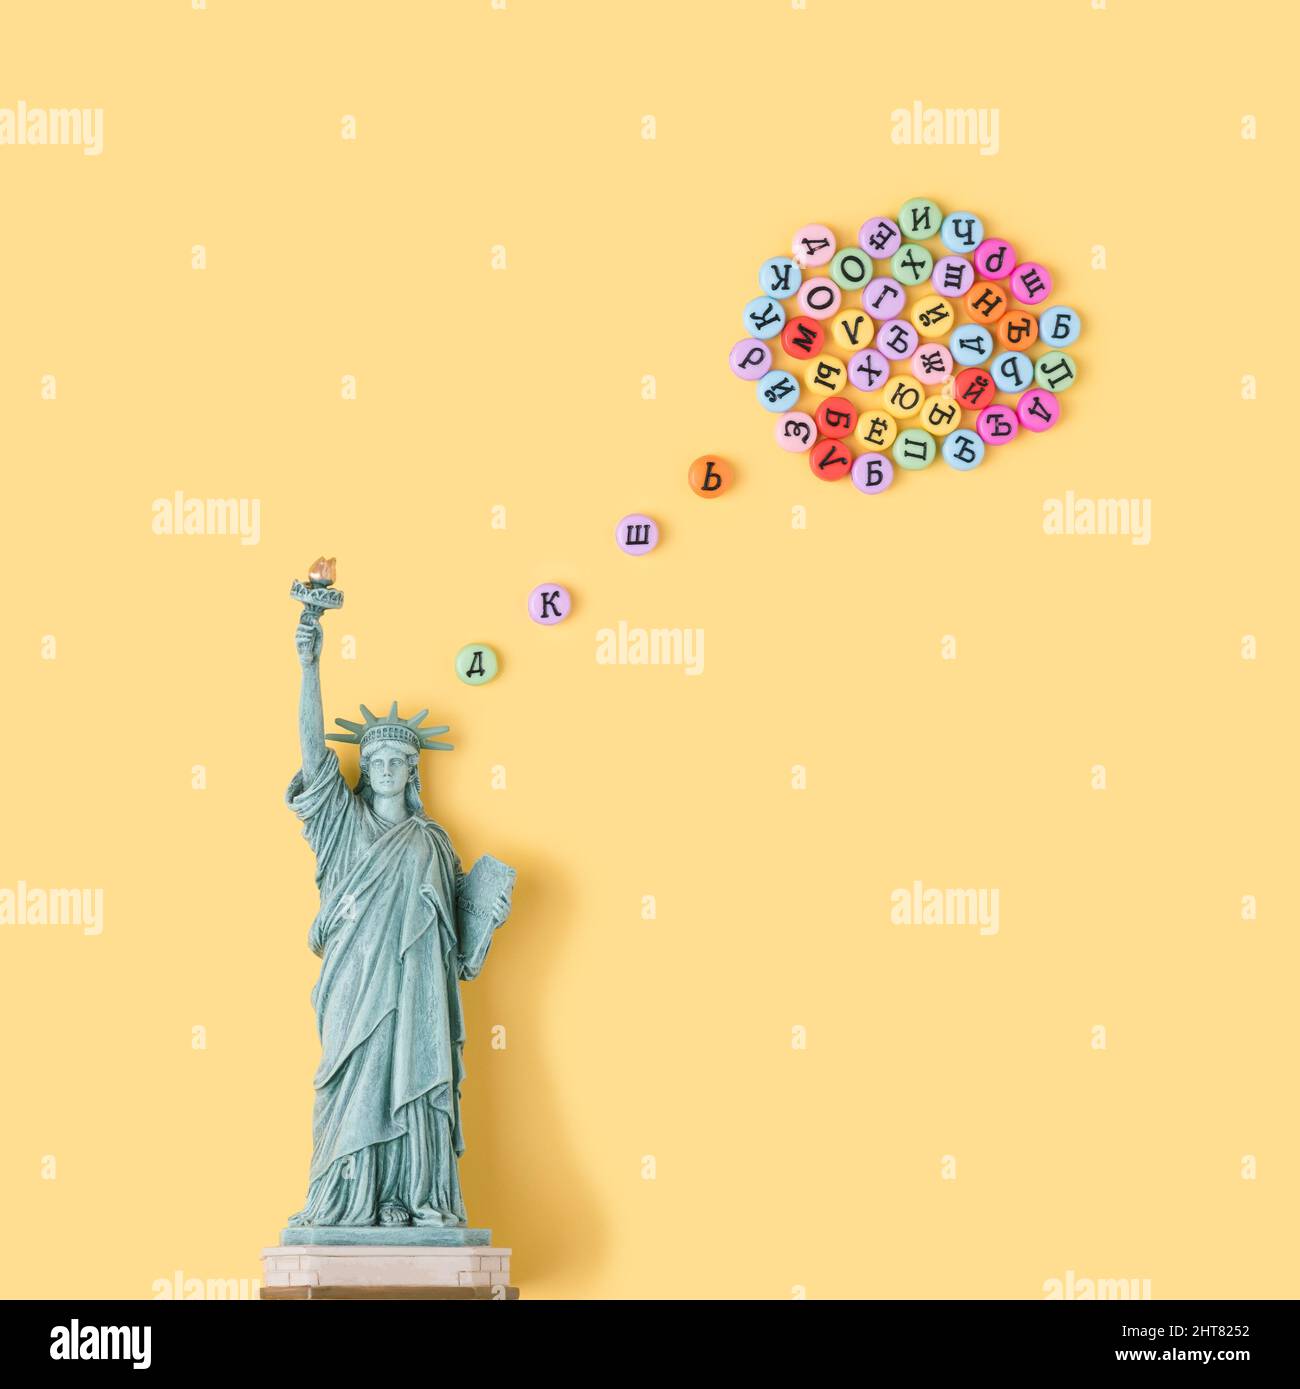 Freiheitsstatue mit denkender Blase aus kyrillischen Buchstaben. USA, Russland Strategie konzeptioneller Hintergrund. Stockfoto